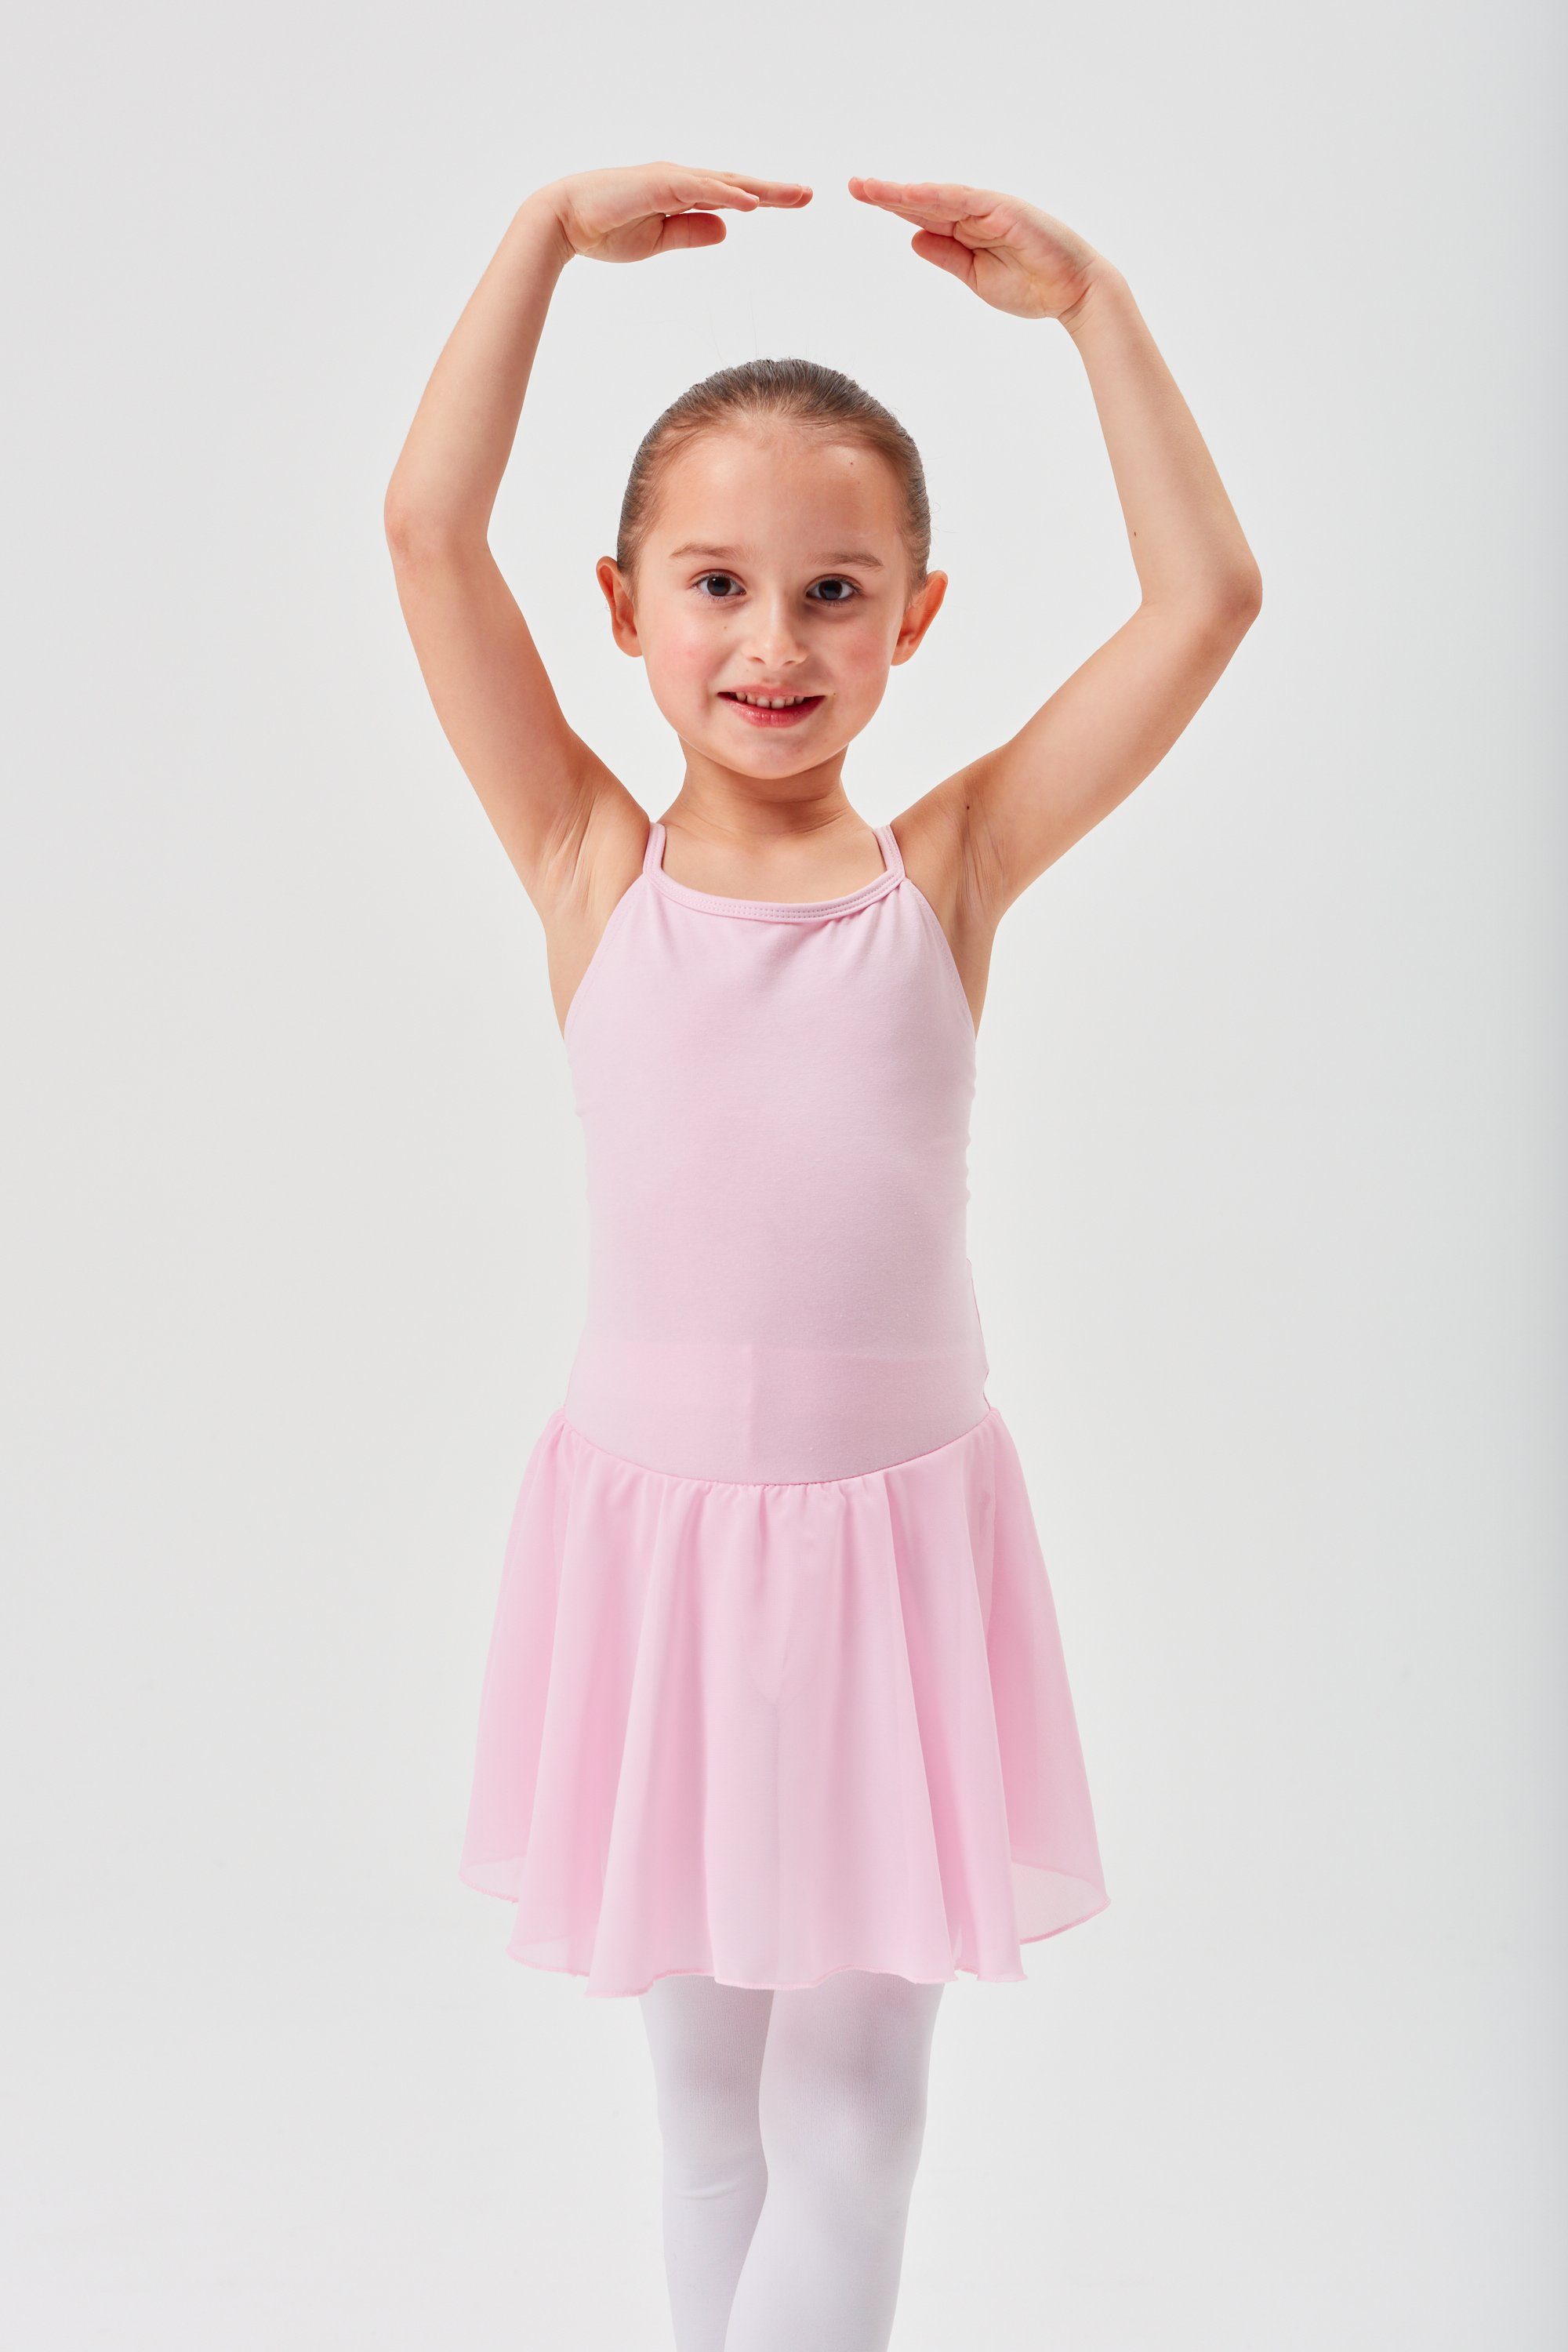 tanzmuster Chiffonkleid Ballettkleid Maggie mit Spaghettiträgern Mädchen Ballettbody mit Chiffon Röckchen rosa | Chiffonkleider